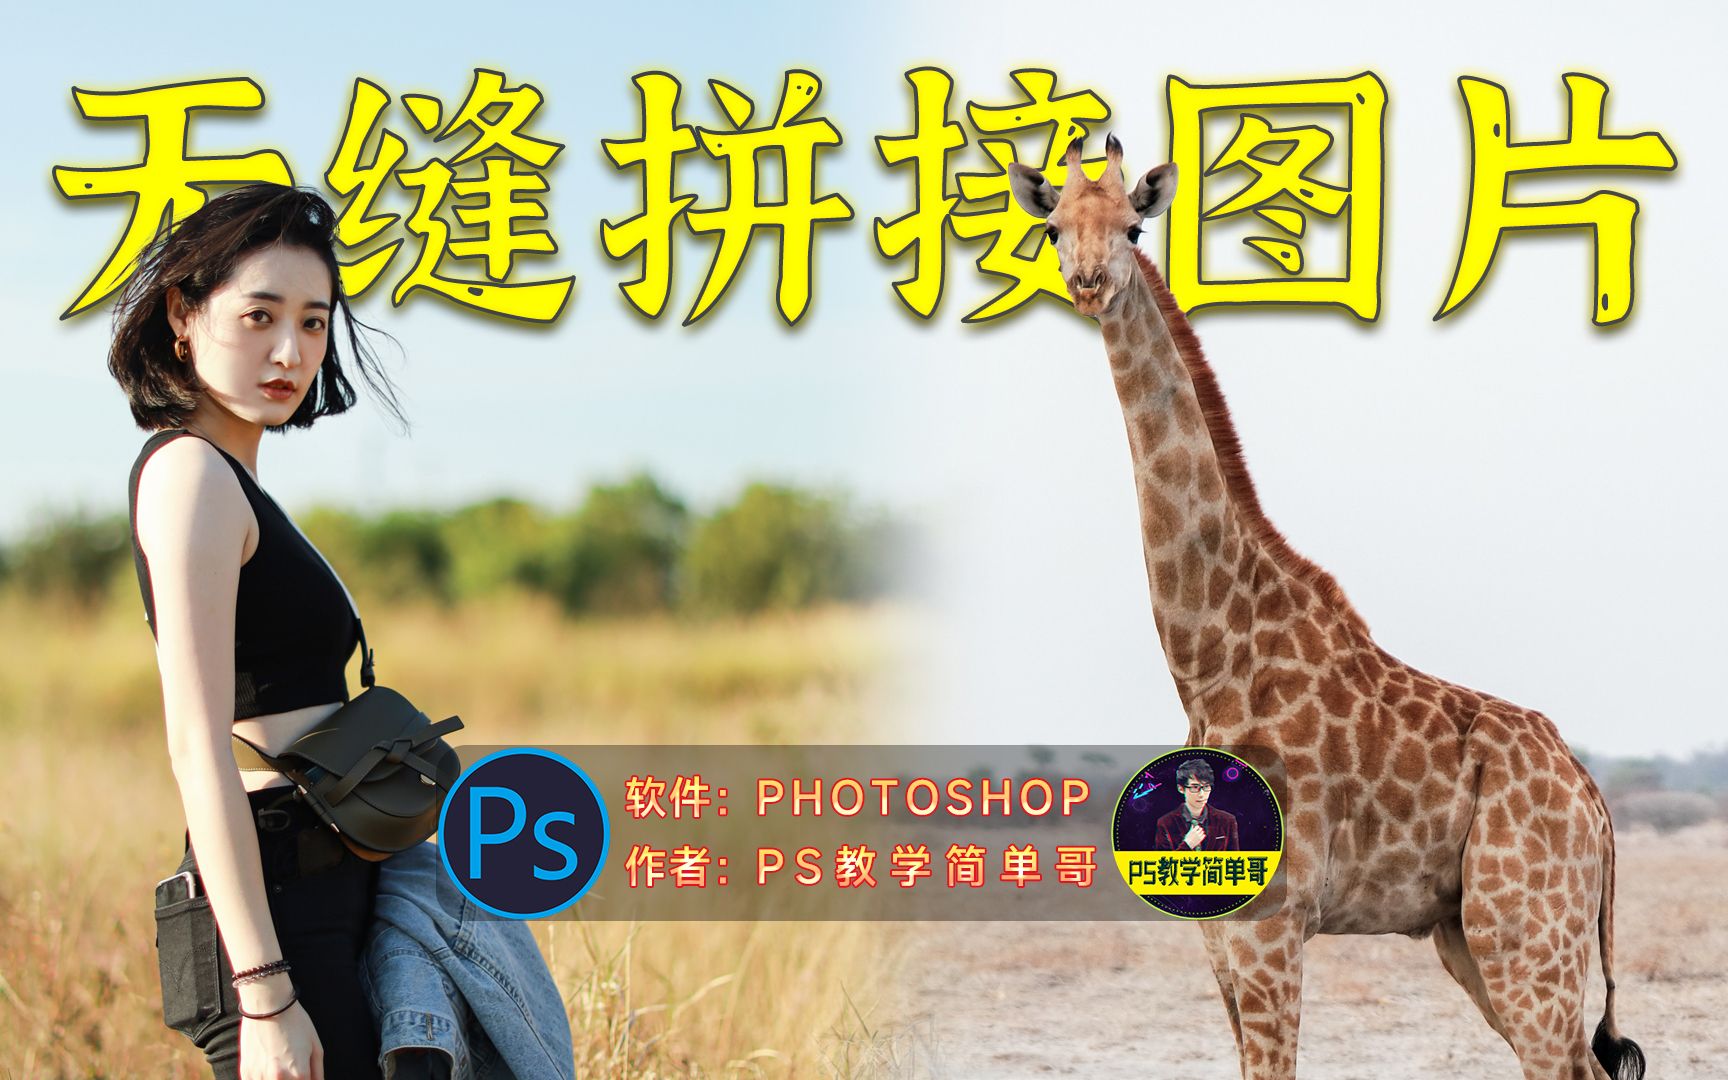 ps如何拼图，ps拼图的方法-Adobe Photoshop-图像处理-软服之家